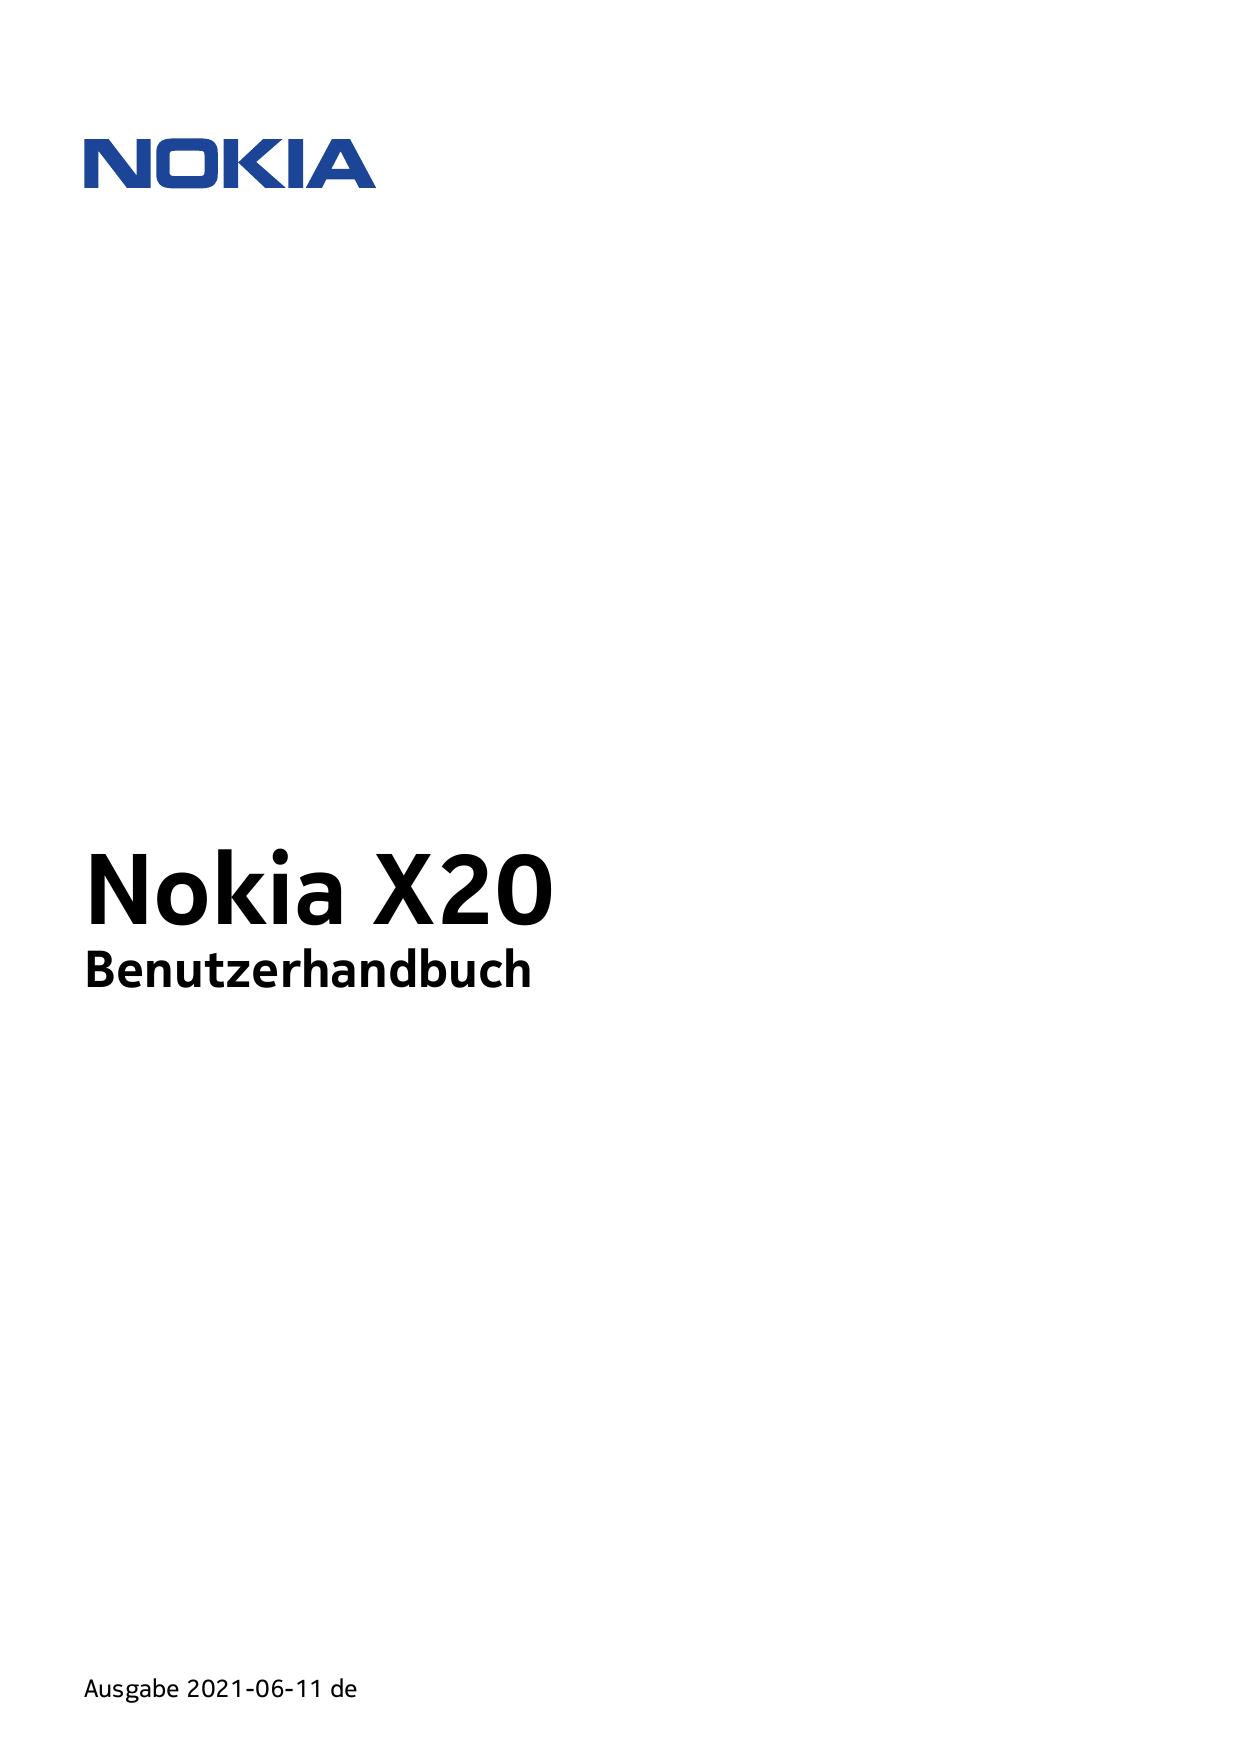 Nokia X20BenutzerhandbuchAusgabe 2021-06-11 de